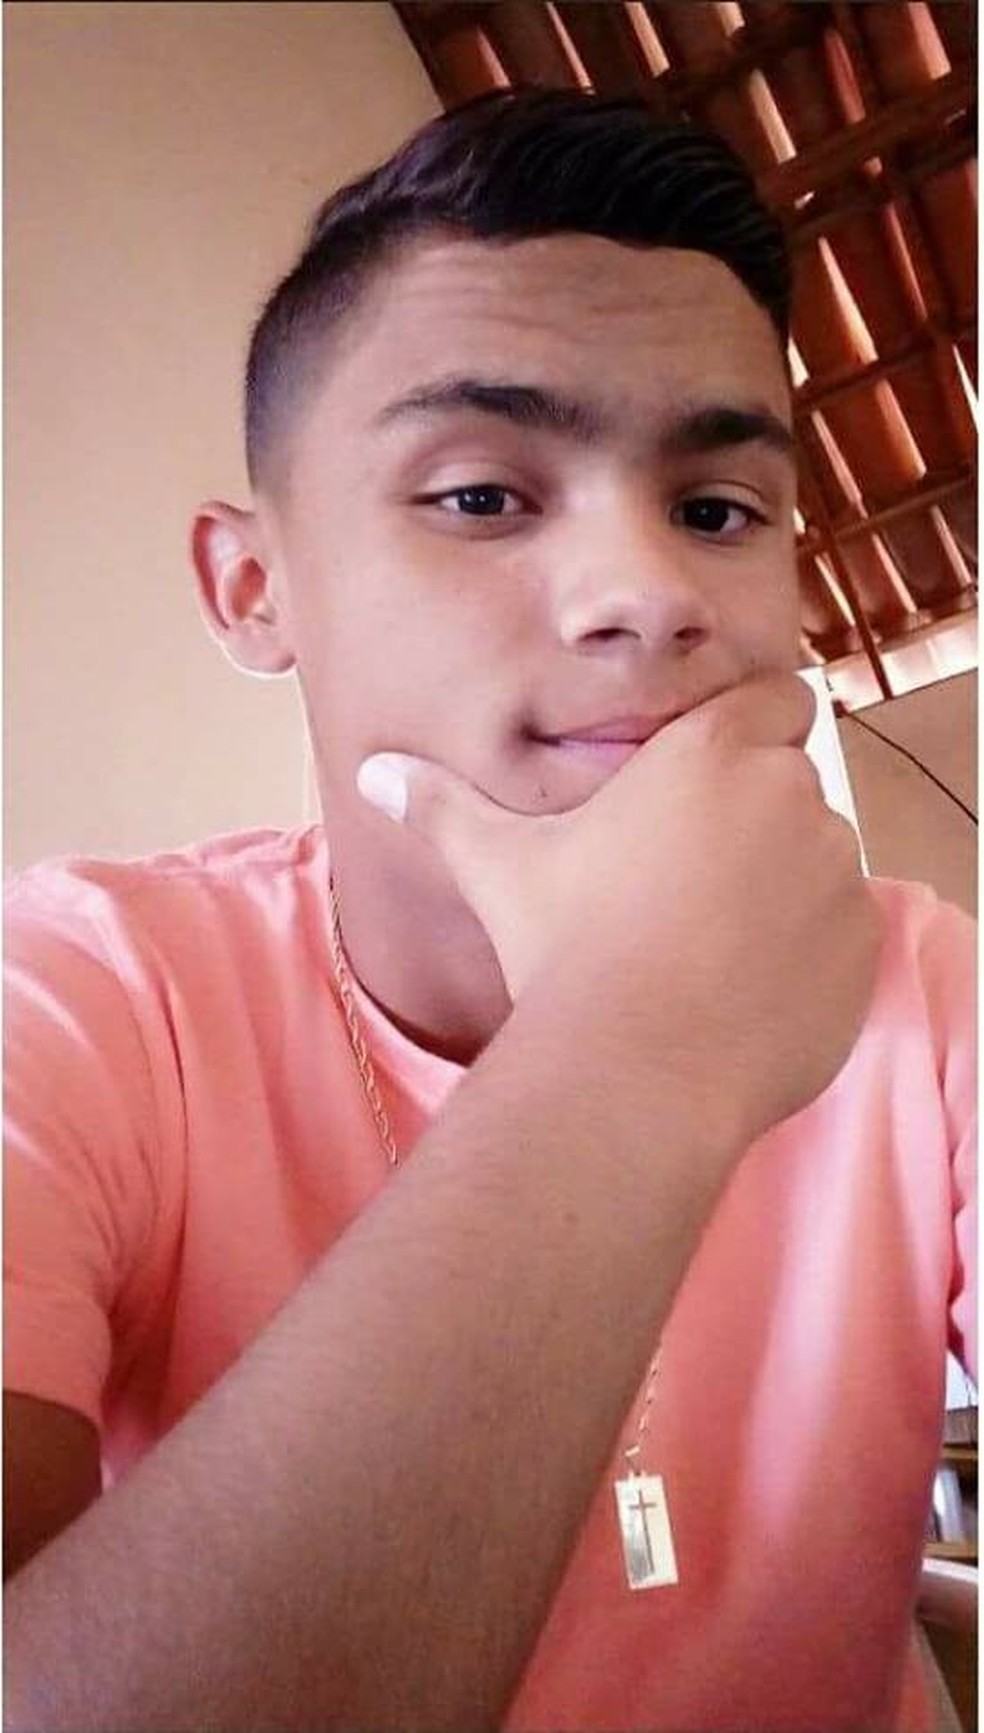 O potiguar José Edcarlos Horácio, de 16 anos, morreu no acidente em Minas Gerais envolvendo sete veículos (Foto: Facebook/Reprodução)